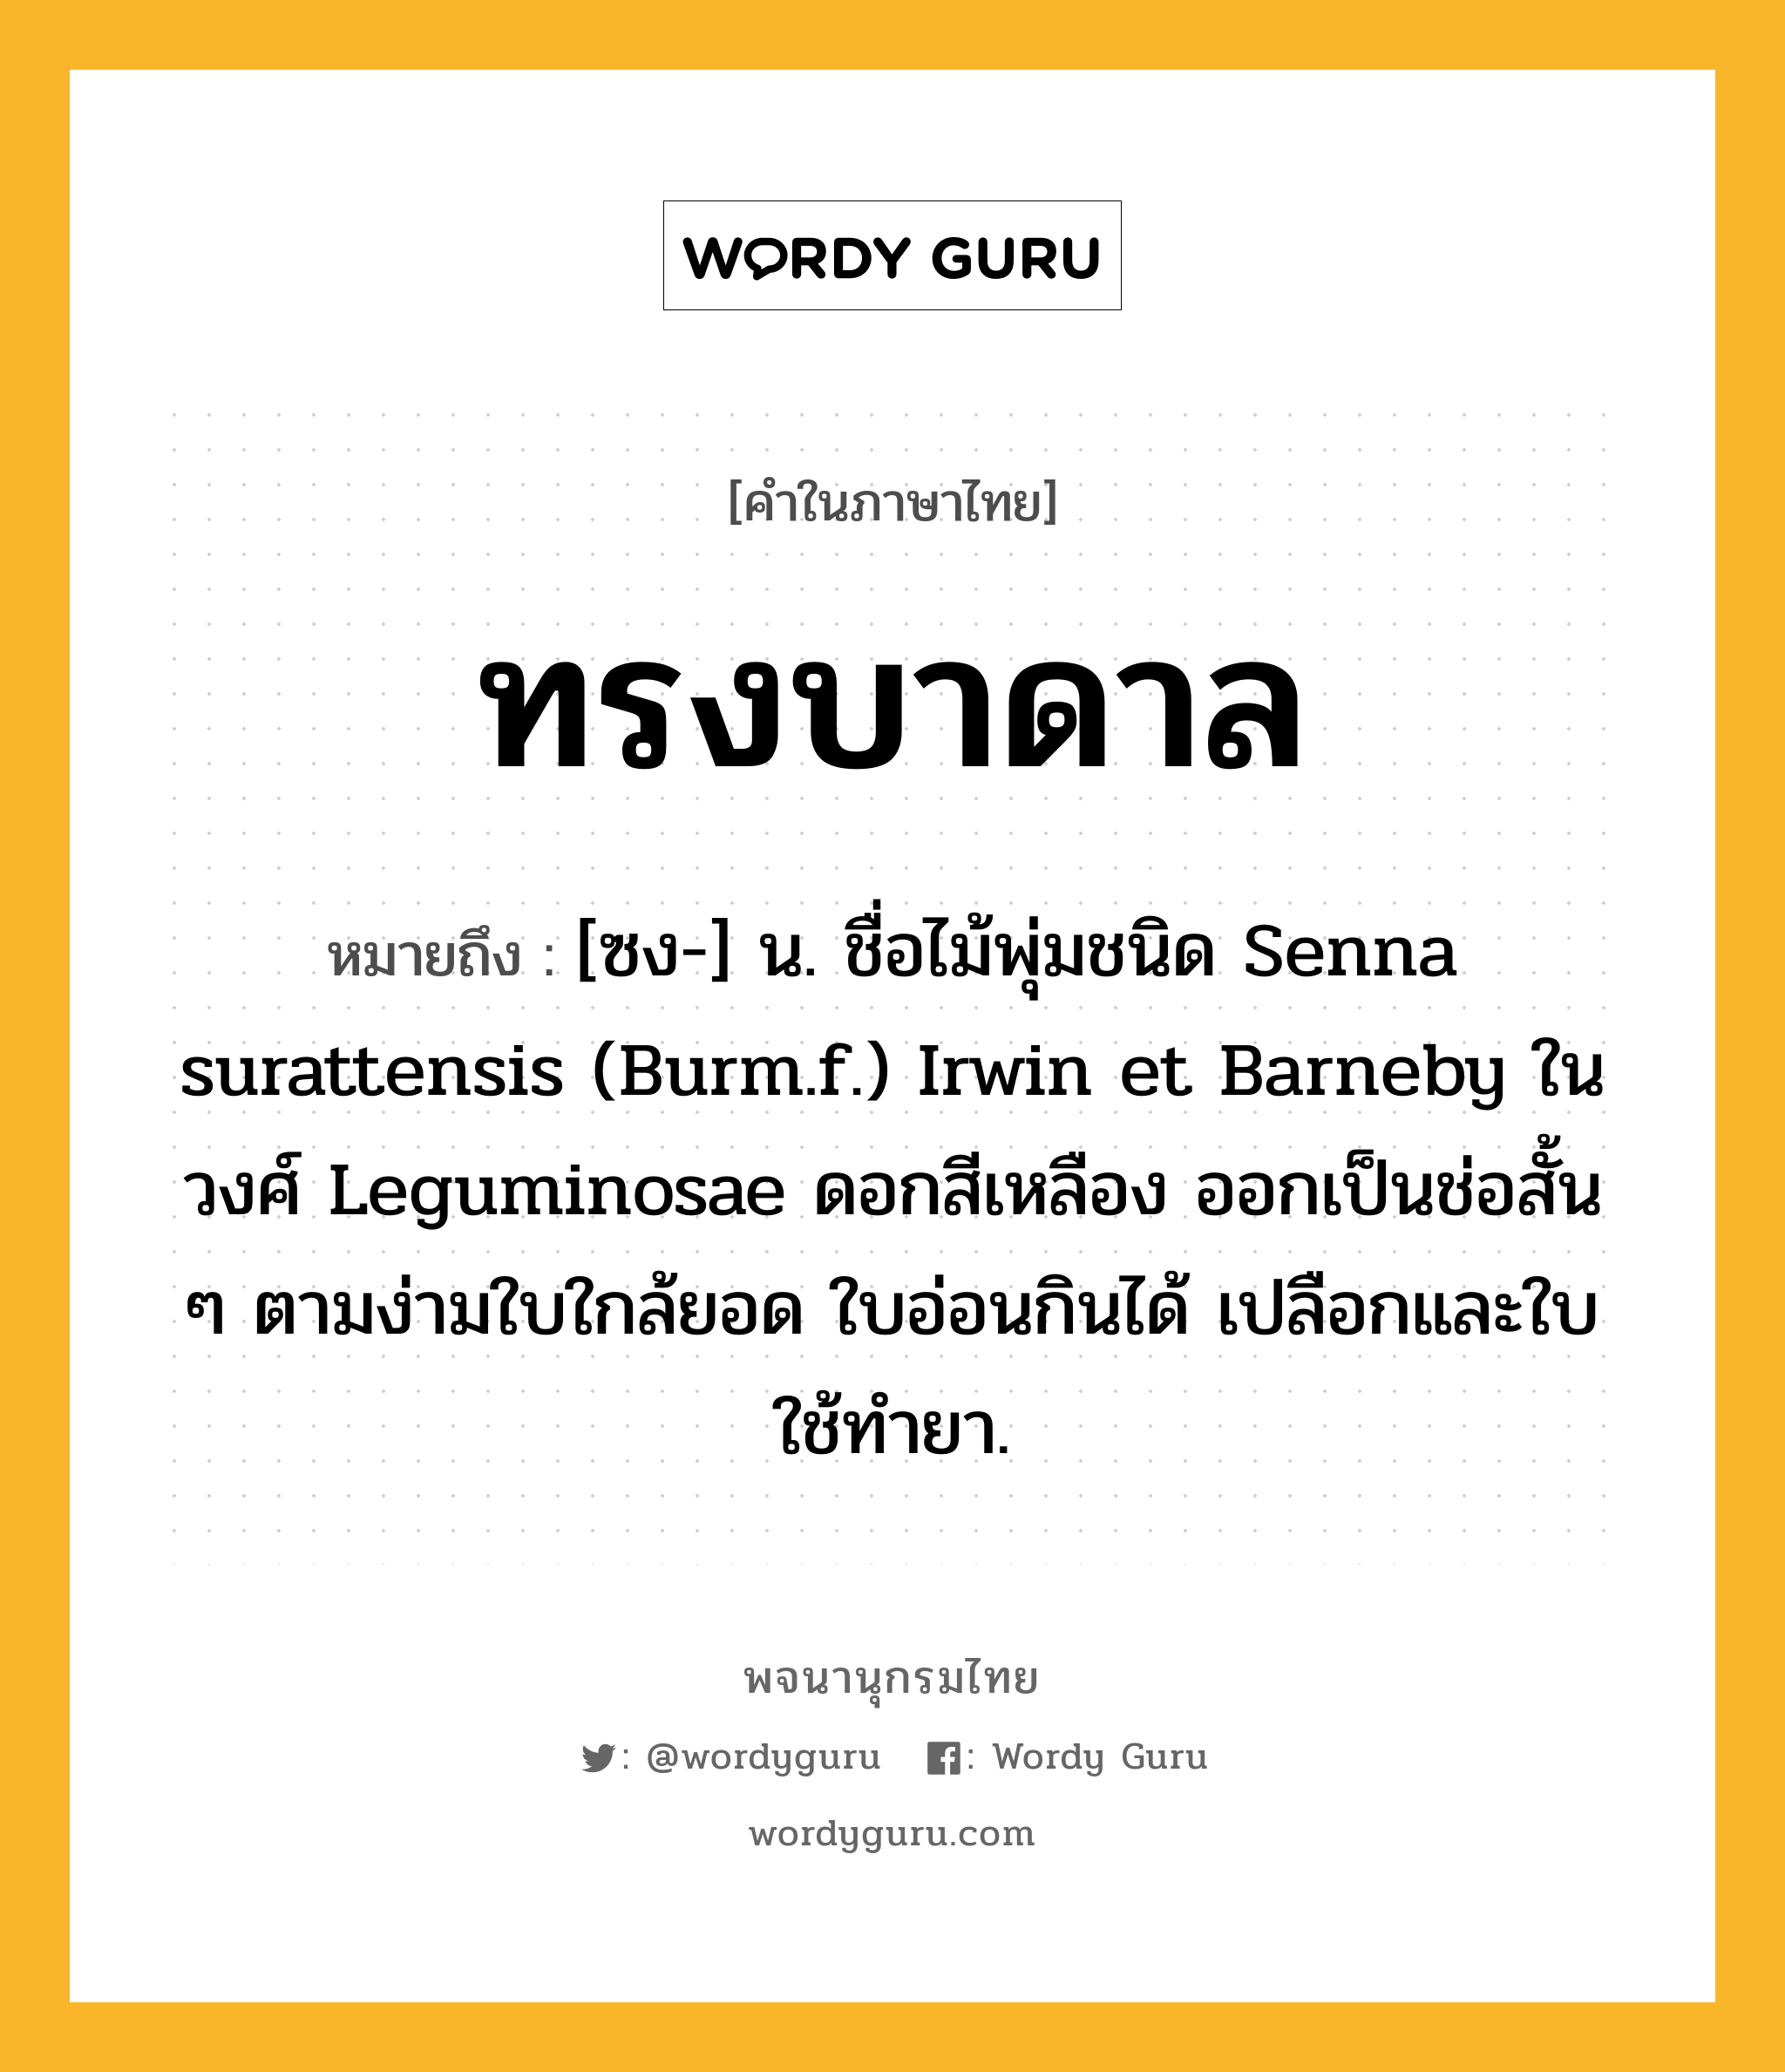 ทรงบาดาล หมายถึงอะไร?, คำในภาษาไทย ทรงบาดาล หมายถึง [ซง-] น. ชื่อไม้พุ่มชนิด Senna surattensis (Burm.f.) Irwin et Barneby ในวงศ์ Leguminosae ดอกสีเหลือง ออกเป็นช่อสั้น ๆ ตามง่ามใบใกล้ยอด ใบอ่อนกินได้ เปลือกและใบใช้ทํายา.